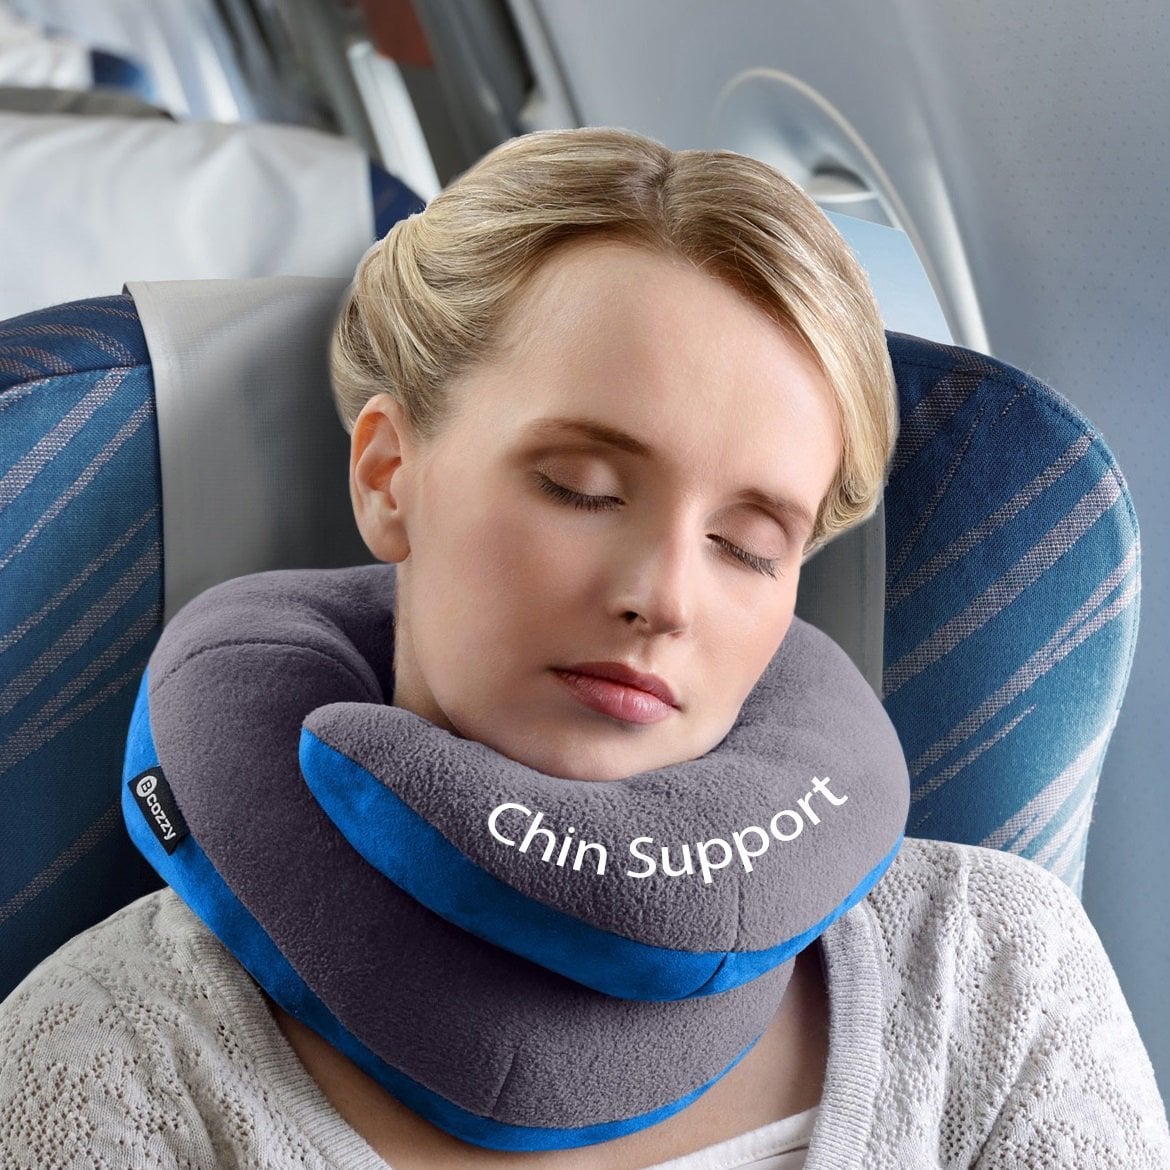 Wukong Direct Cartoon Memory Foam Soft Neck & Head Support Travel Pillow,a 